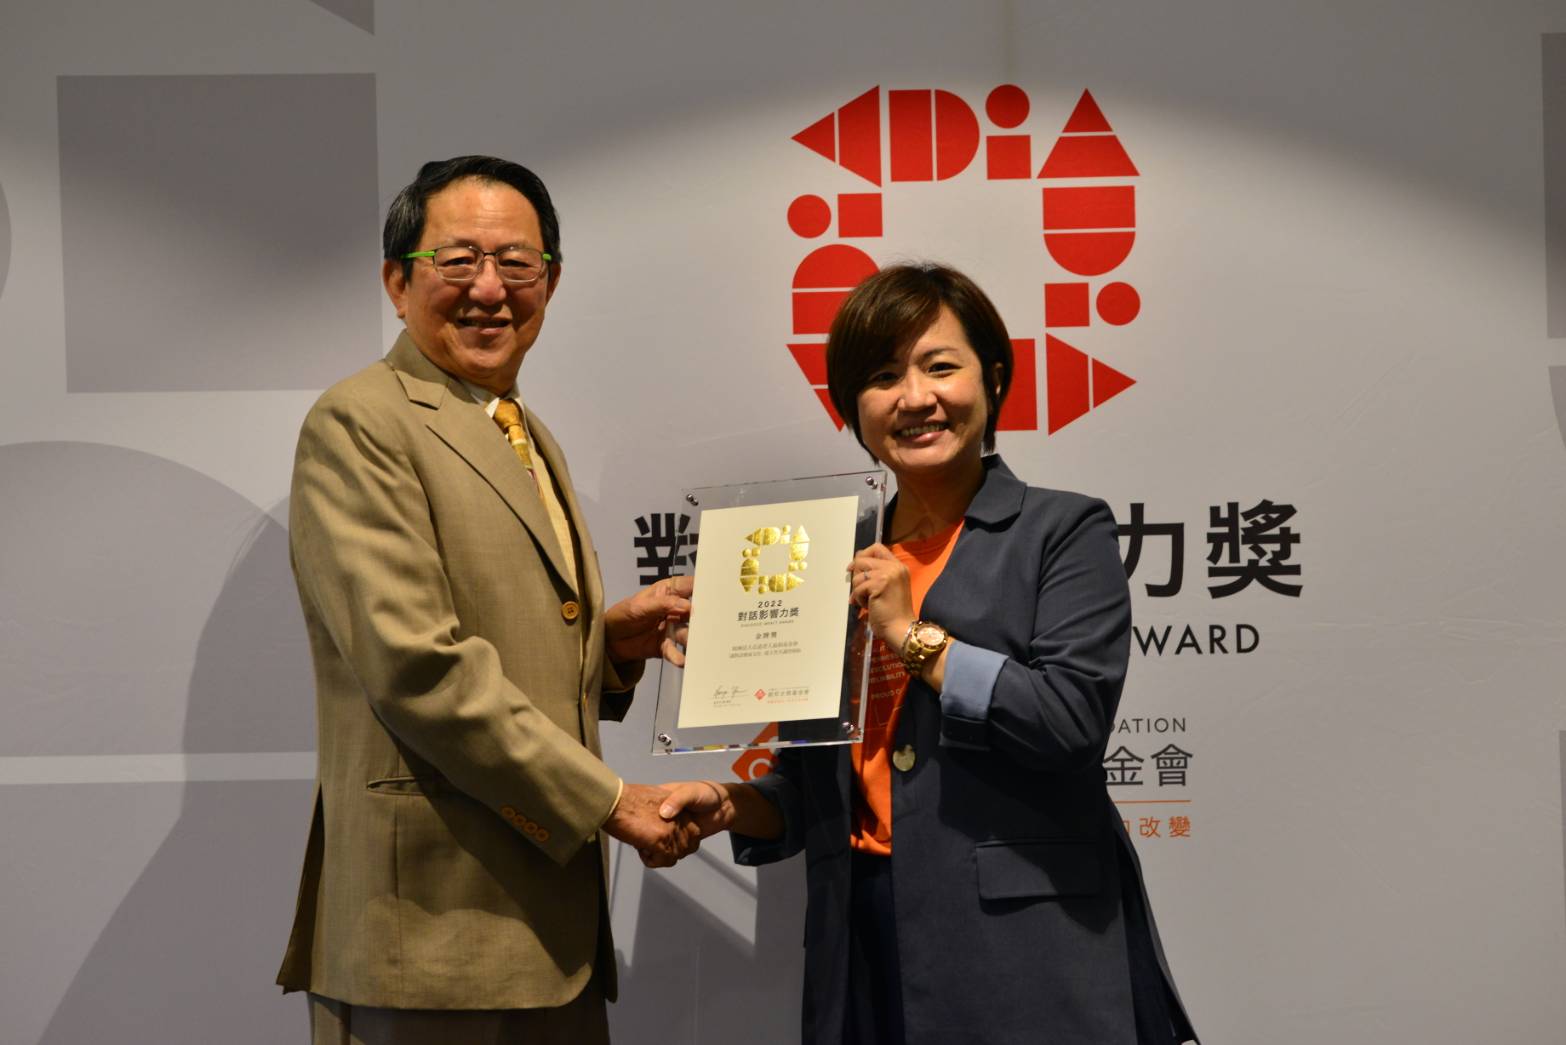 弘道榮獲朝邦文教基金會2022第四屆「對話影響力獎」金牌